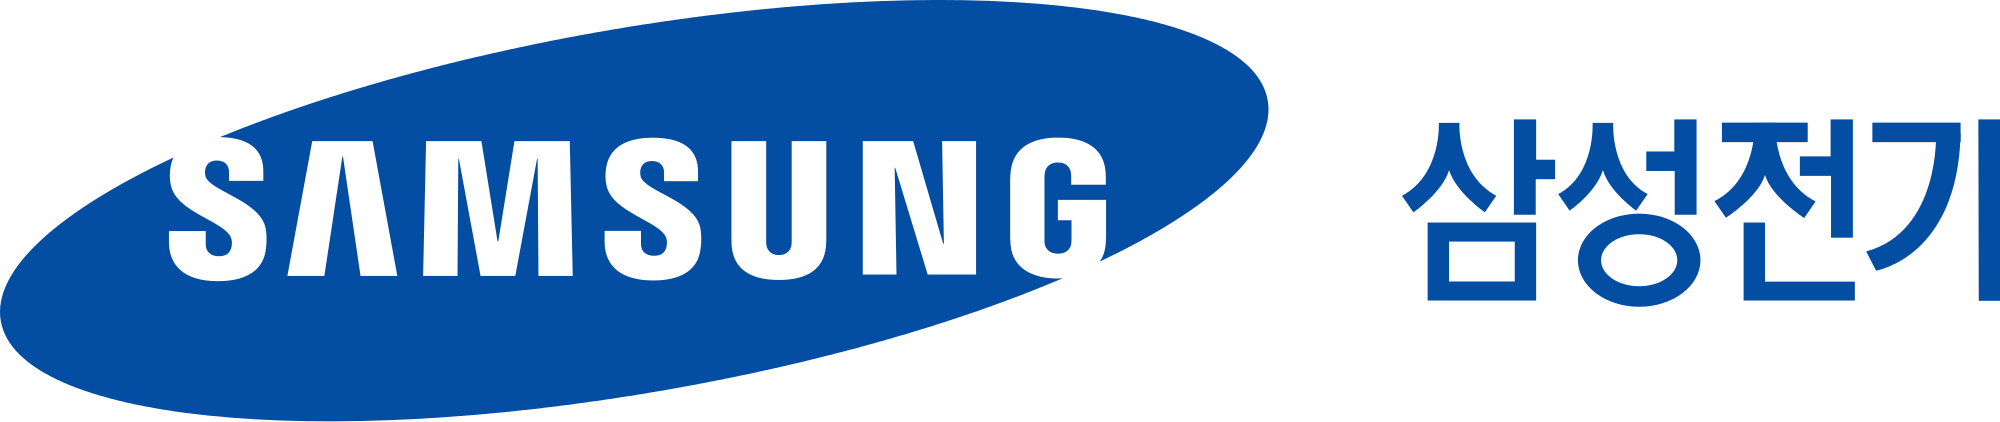 Samsung logo PNG HD Calidad